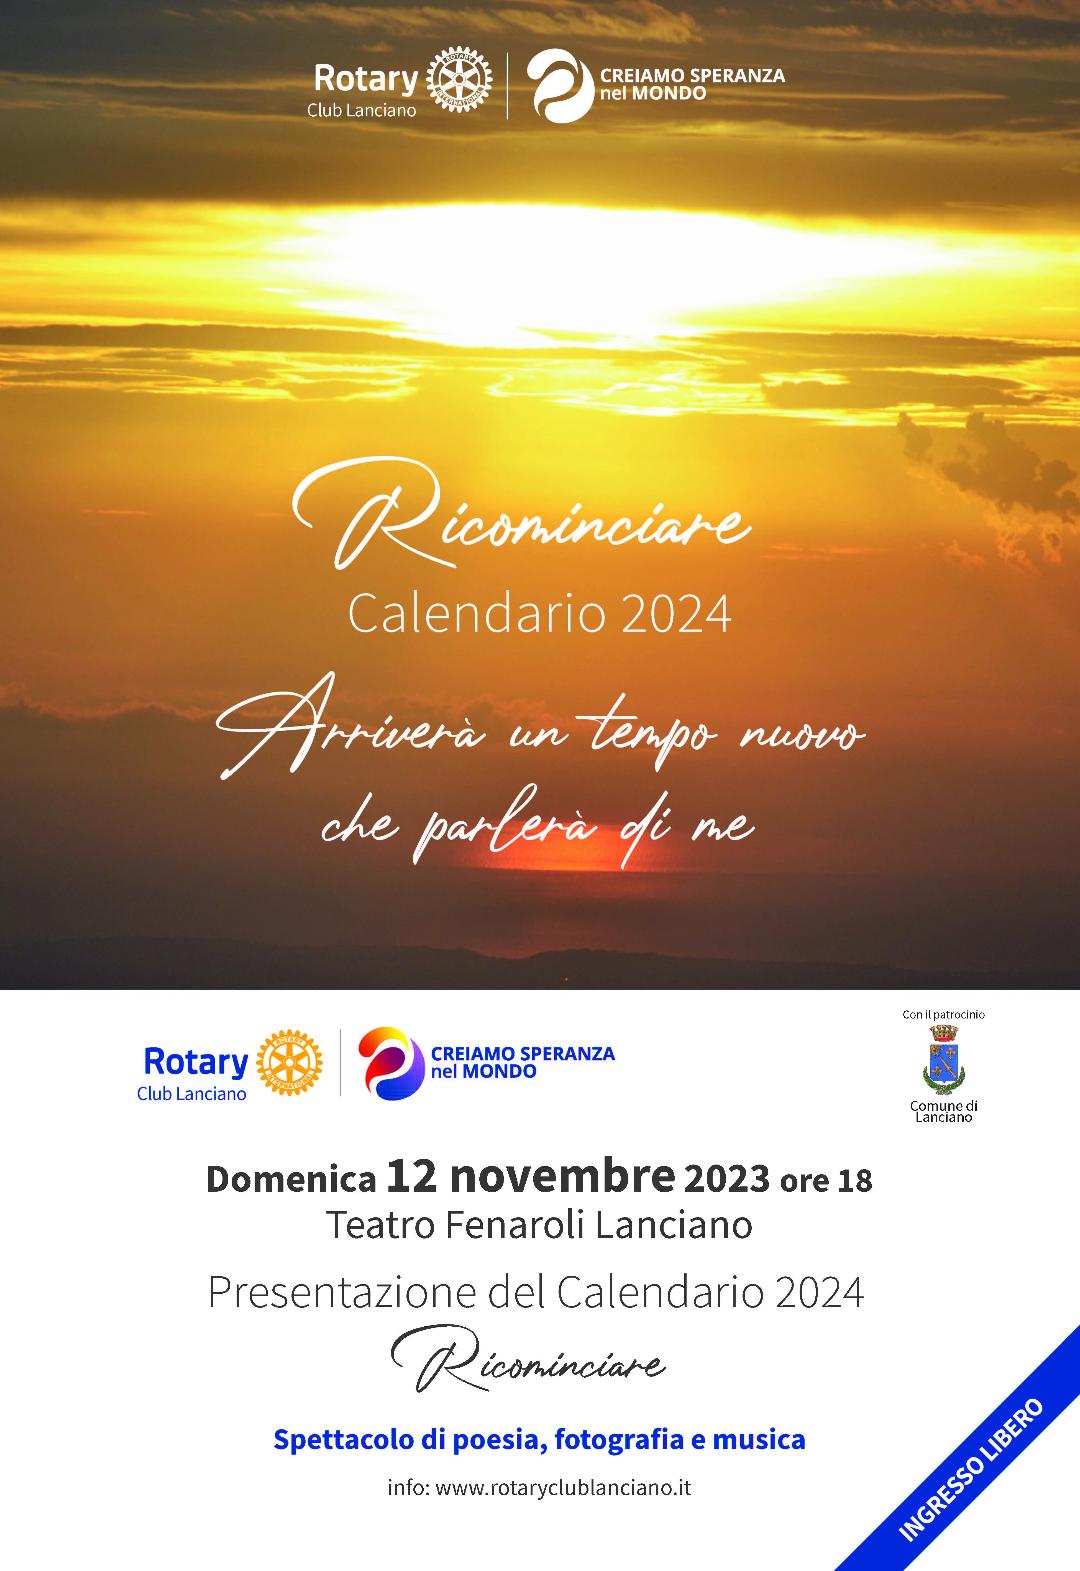  Ambulatorio solidale: raccolta fondi del Rotary Club Lanciano con il Calendario 2024. Domenica lo spettacolo al Teatro Fenaroli